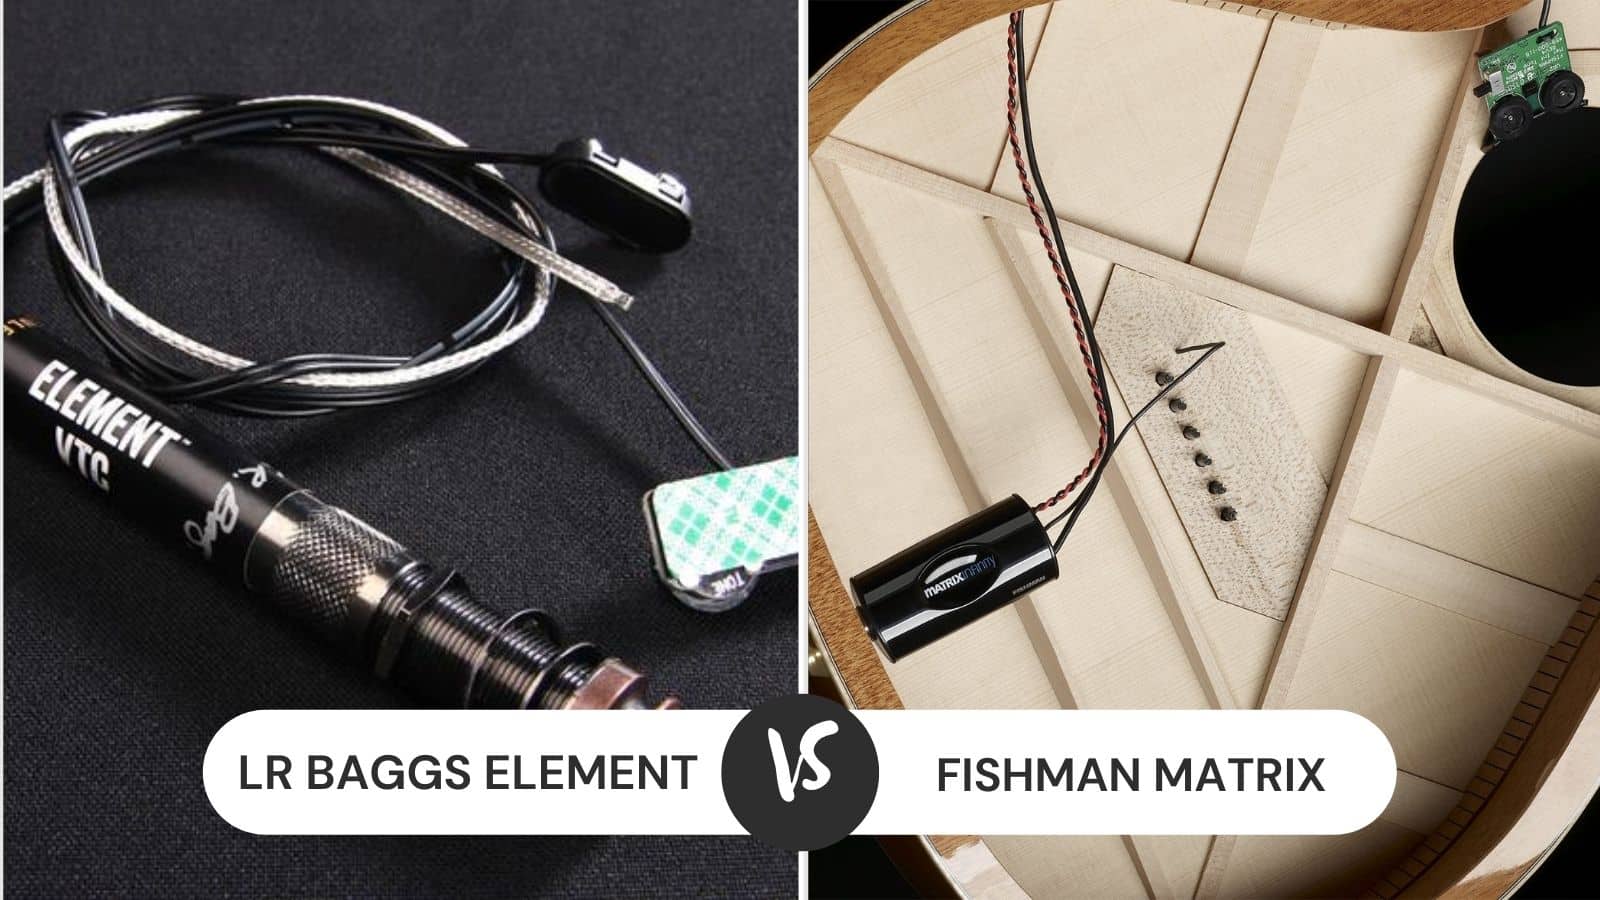 LR Baggs Element vs Fishman Matrix